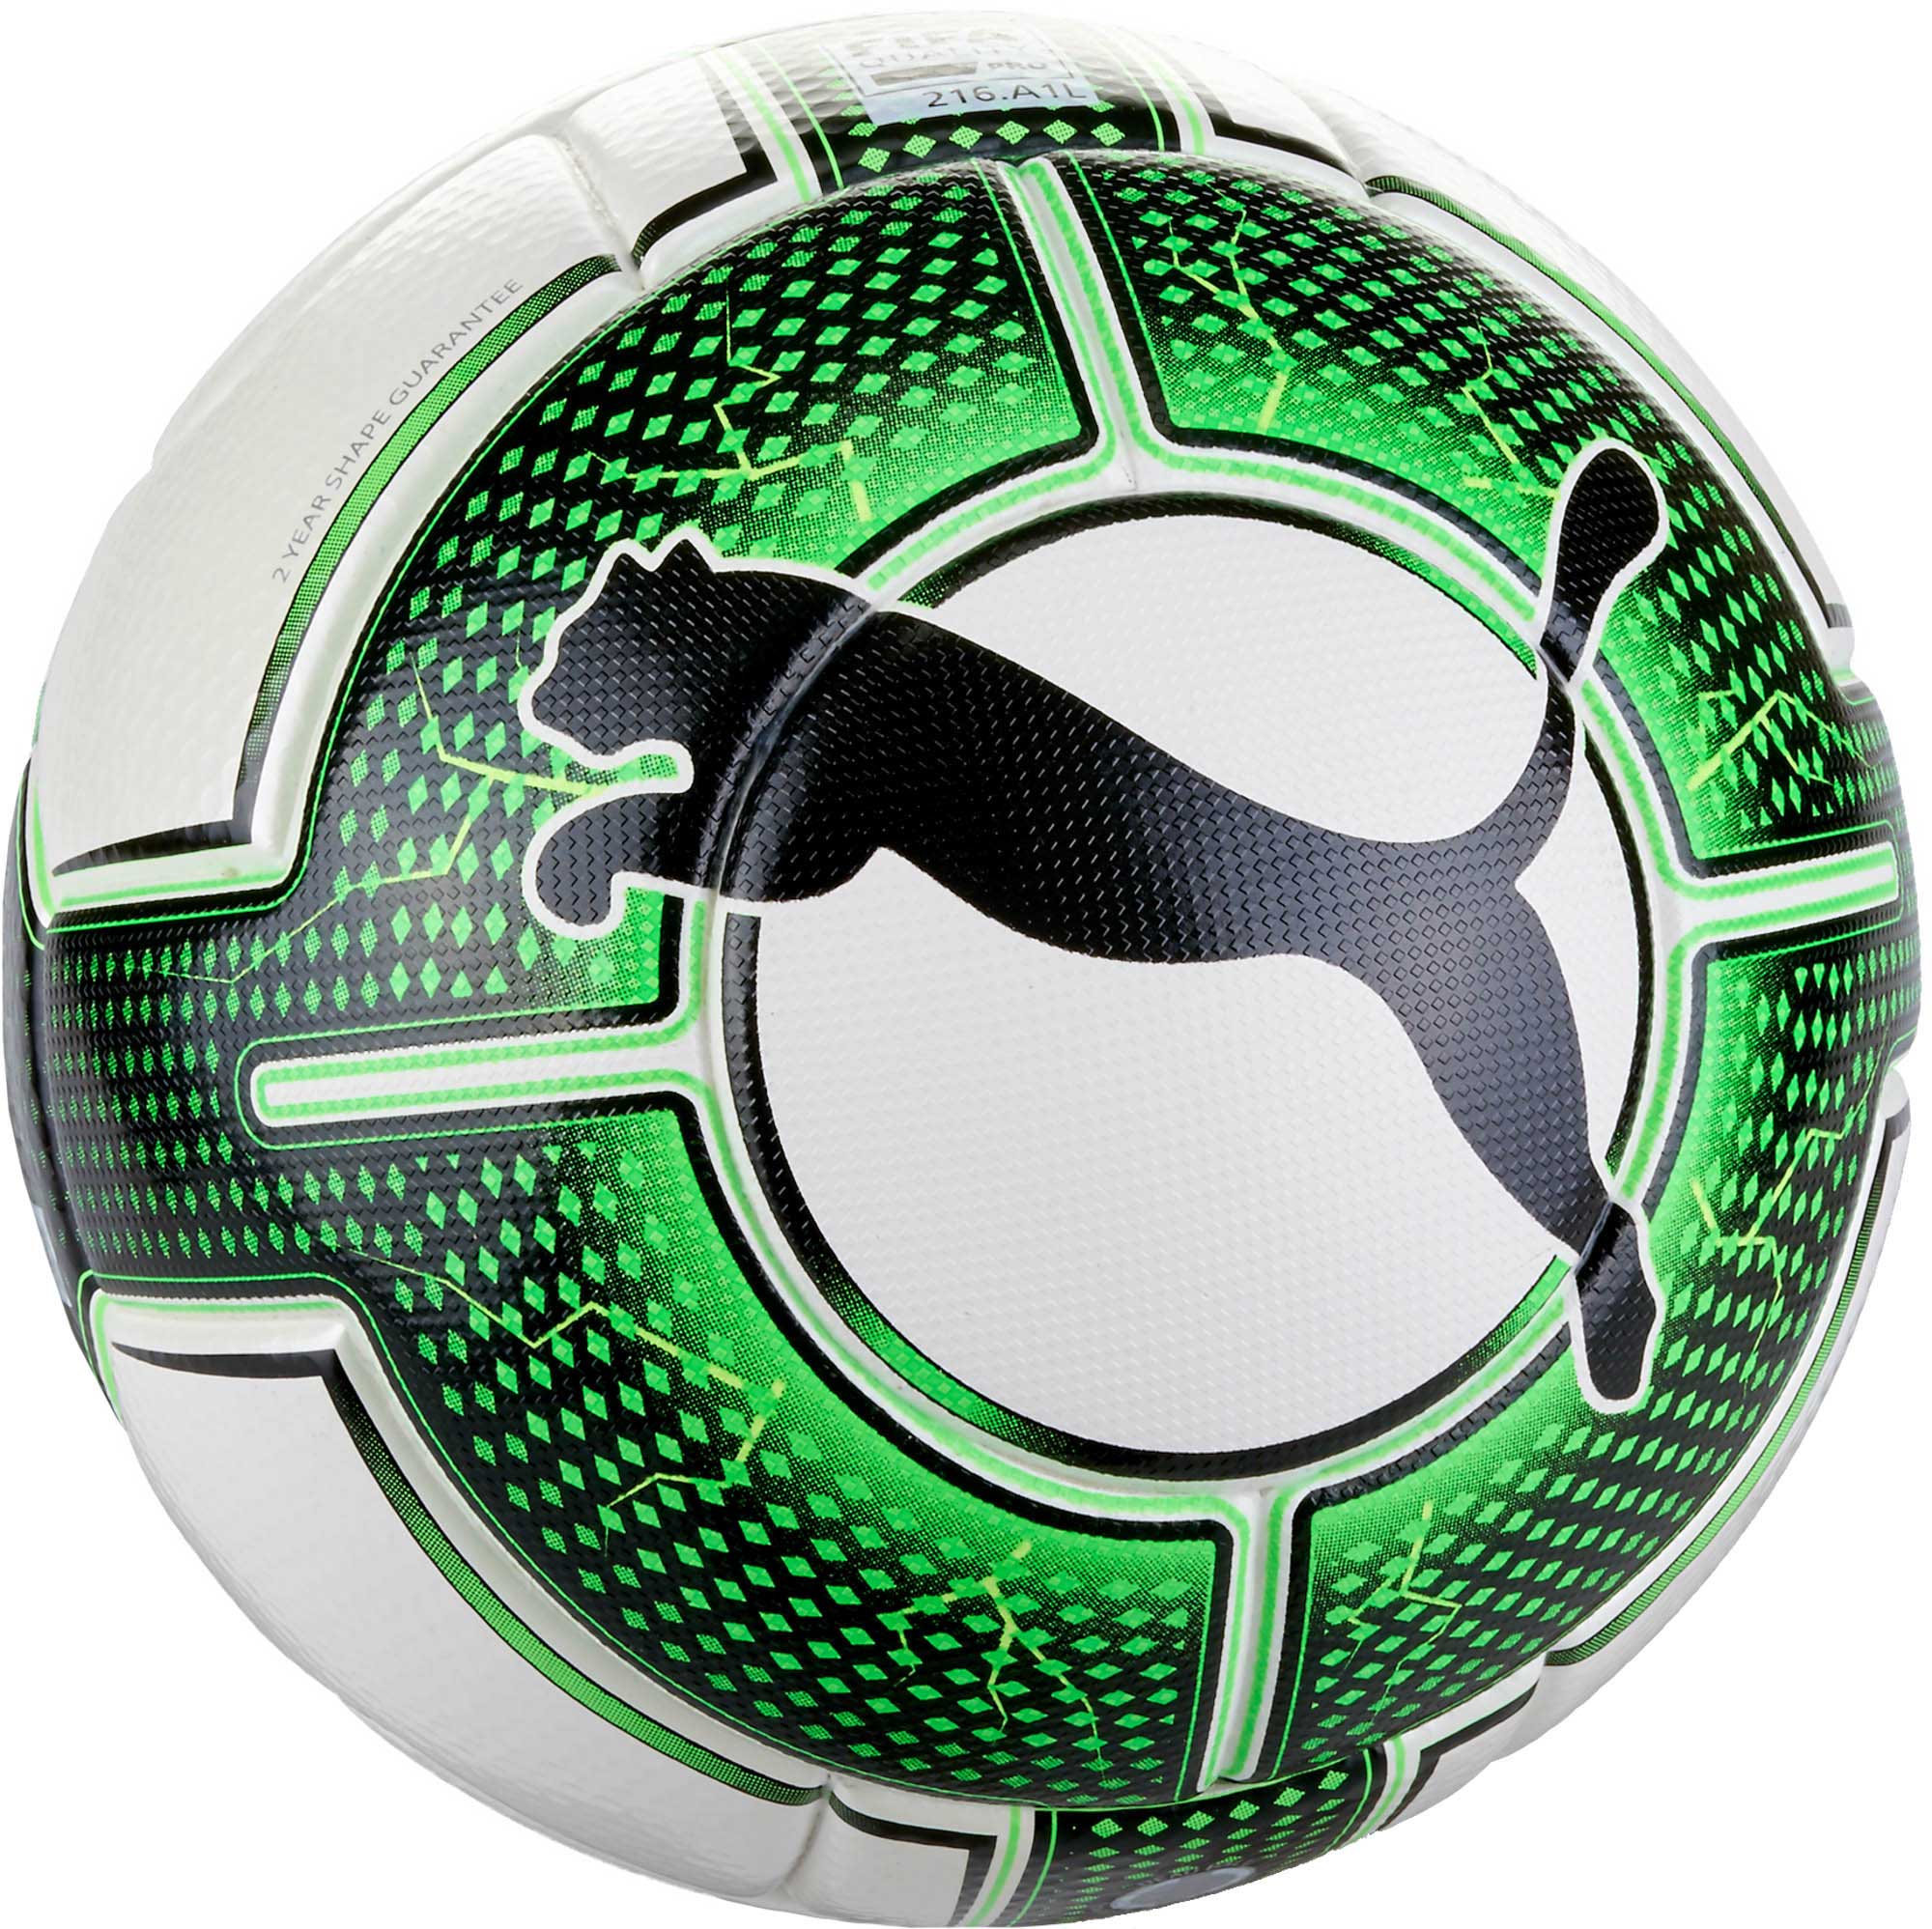 Schrijf op Een hekel hebben aan Sentimenteel Puma evoPOWER Vigor 1.3 Match Ball - Puma Soccer Balls